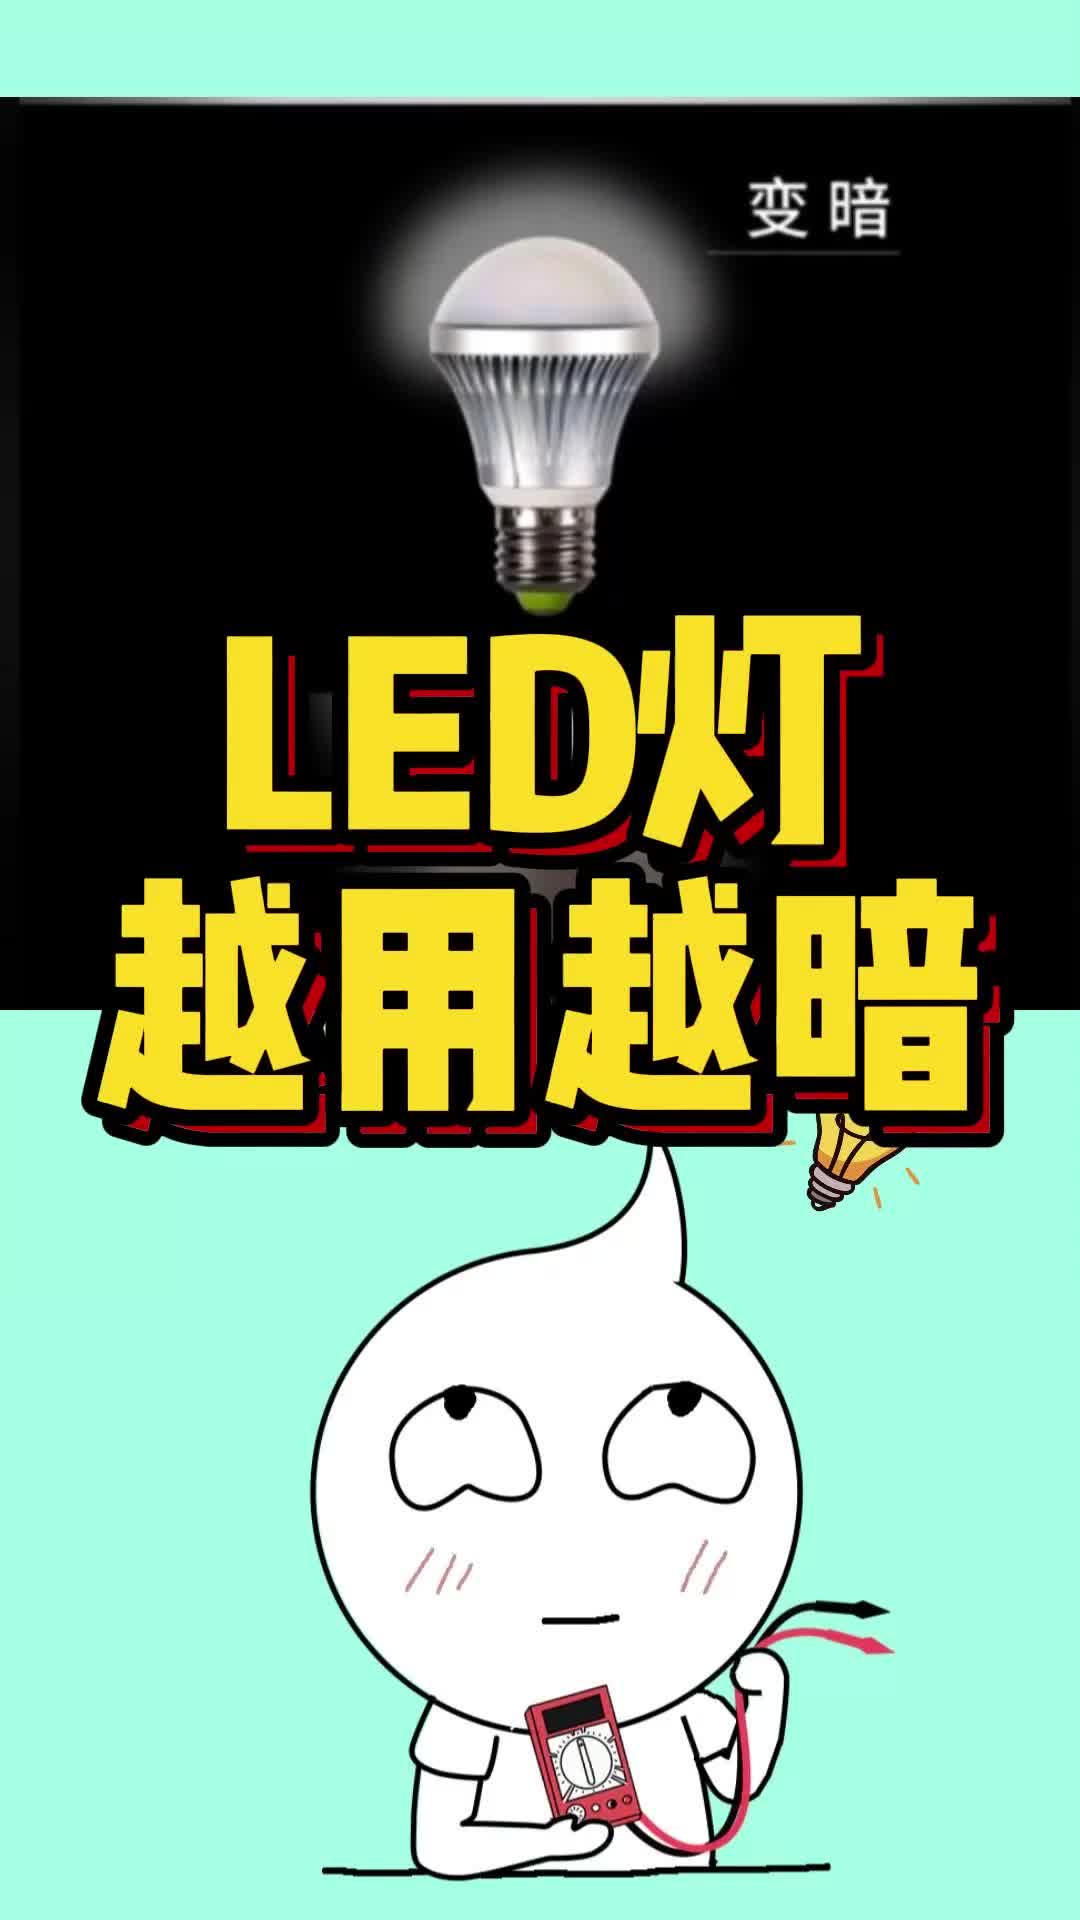 LED灯为什么会越用越暗，原来是这个电容
在搞鬼！#LED #电容
 